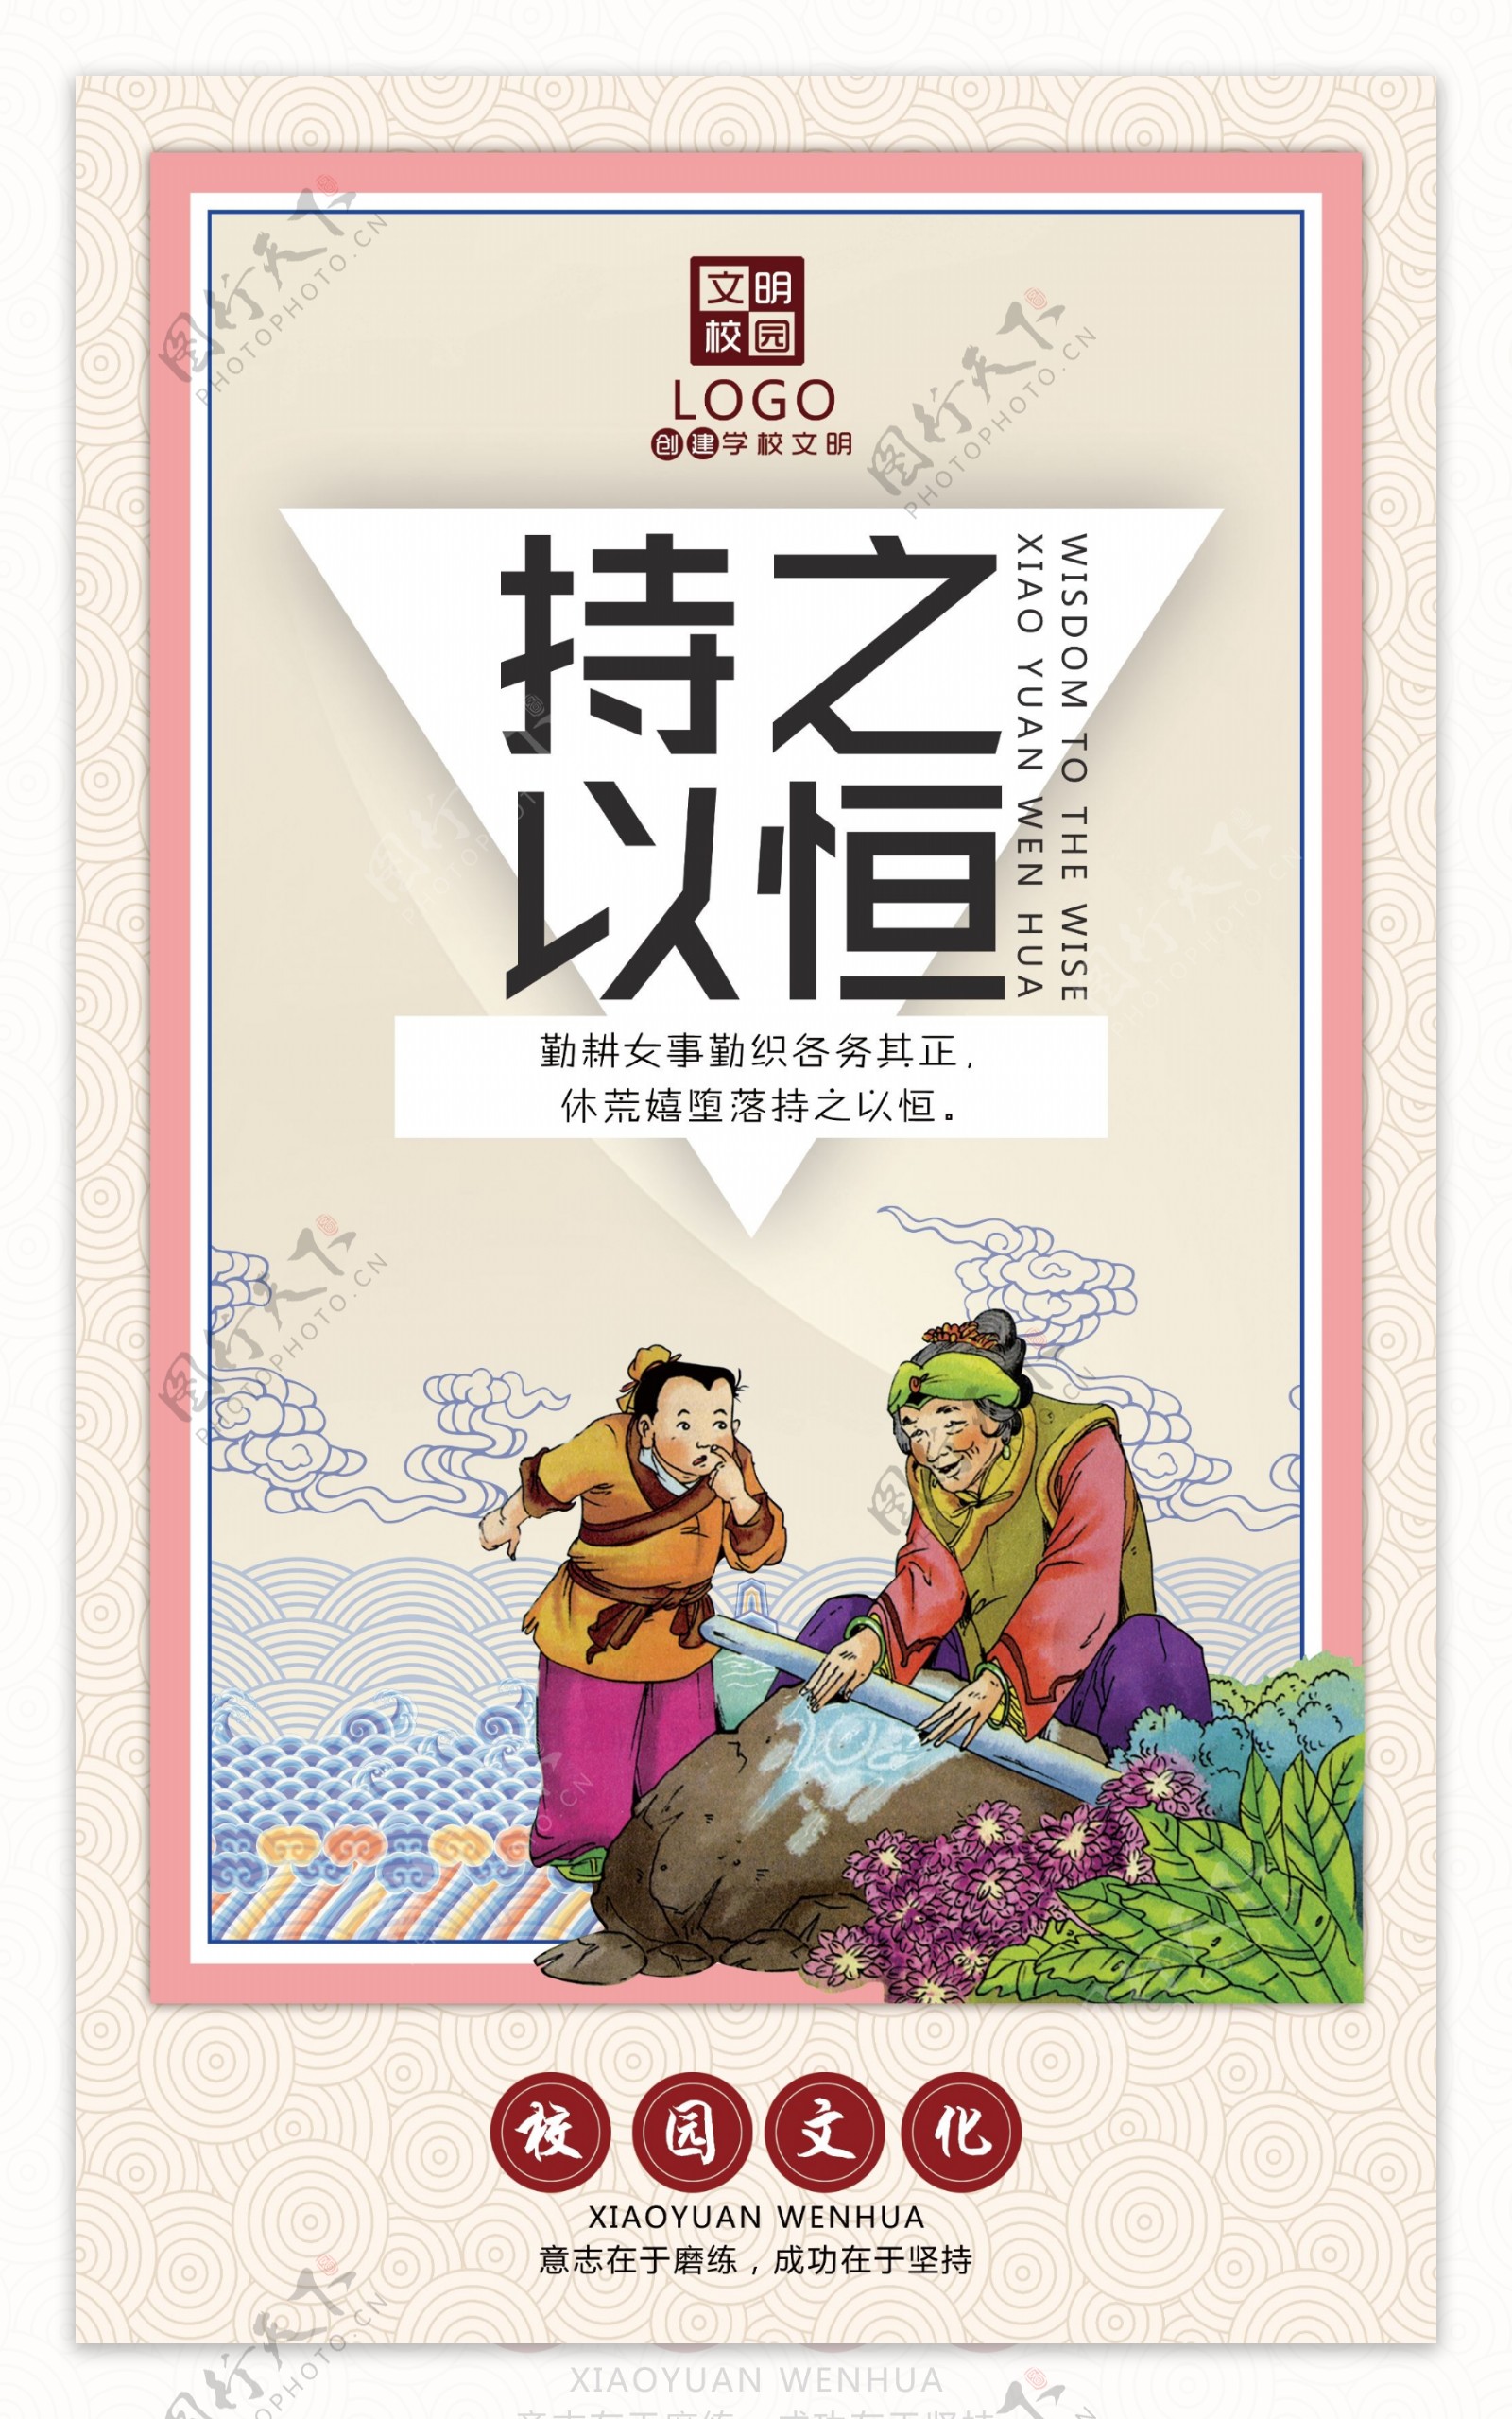 中国风校园文化励志海报挂画设计